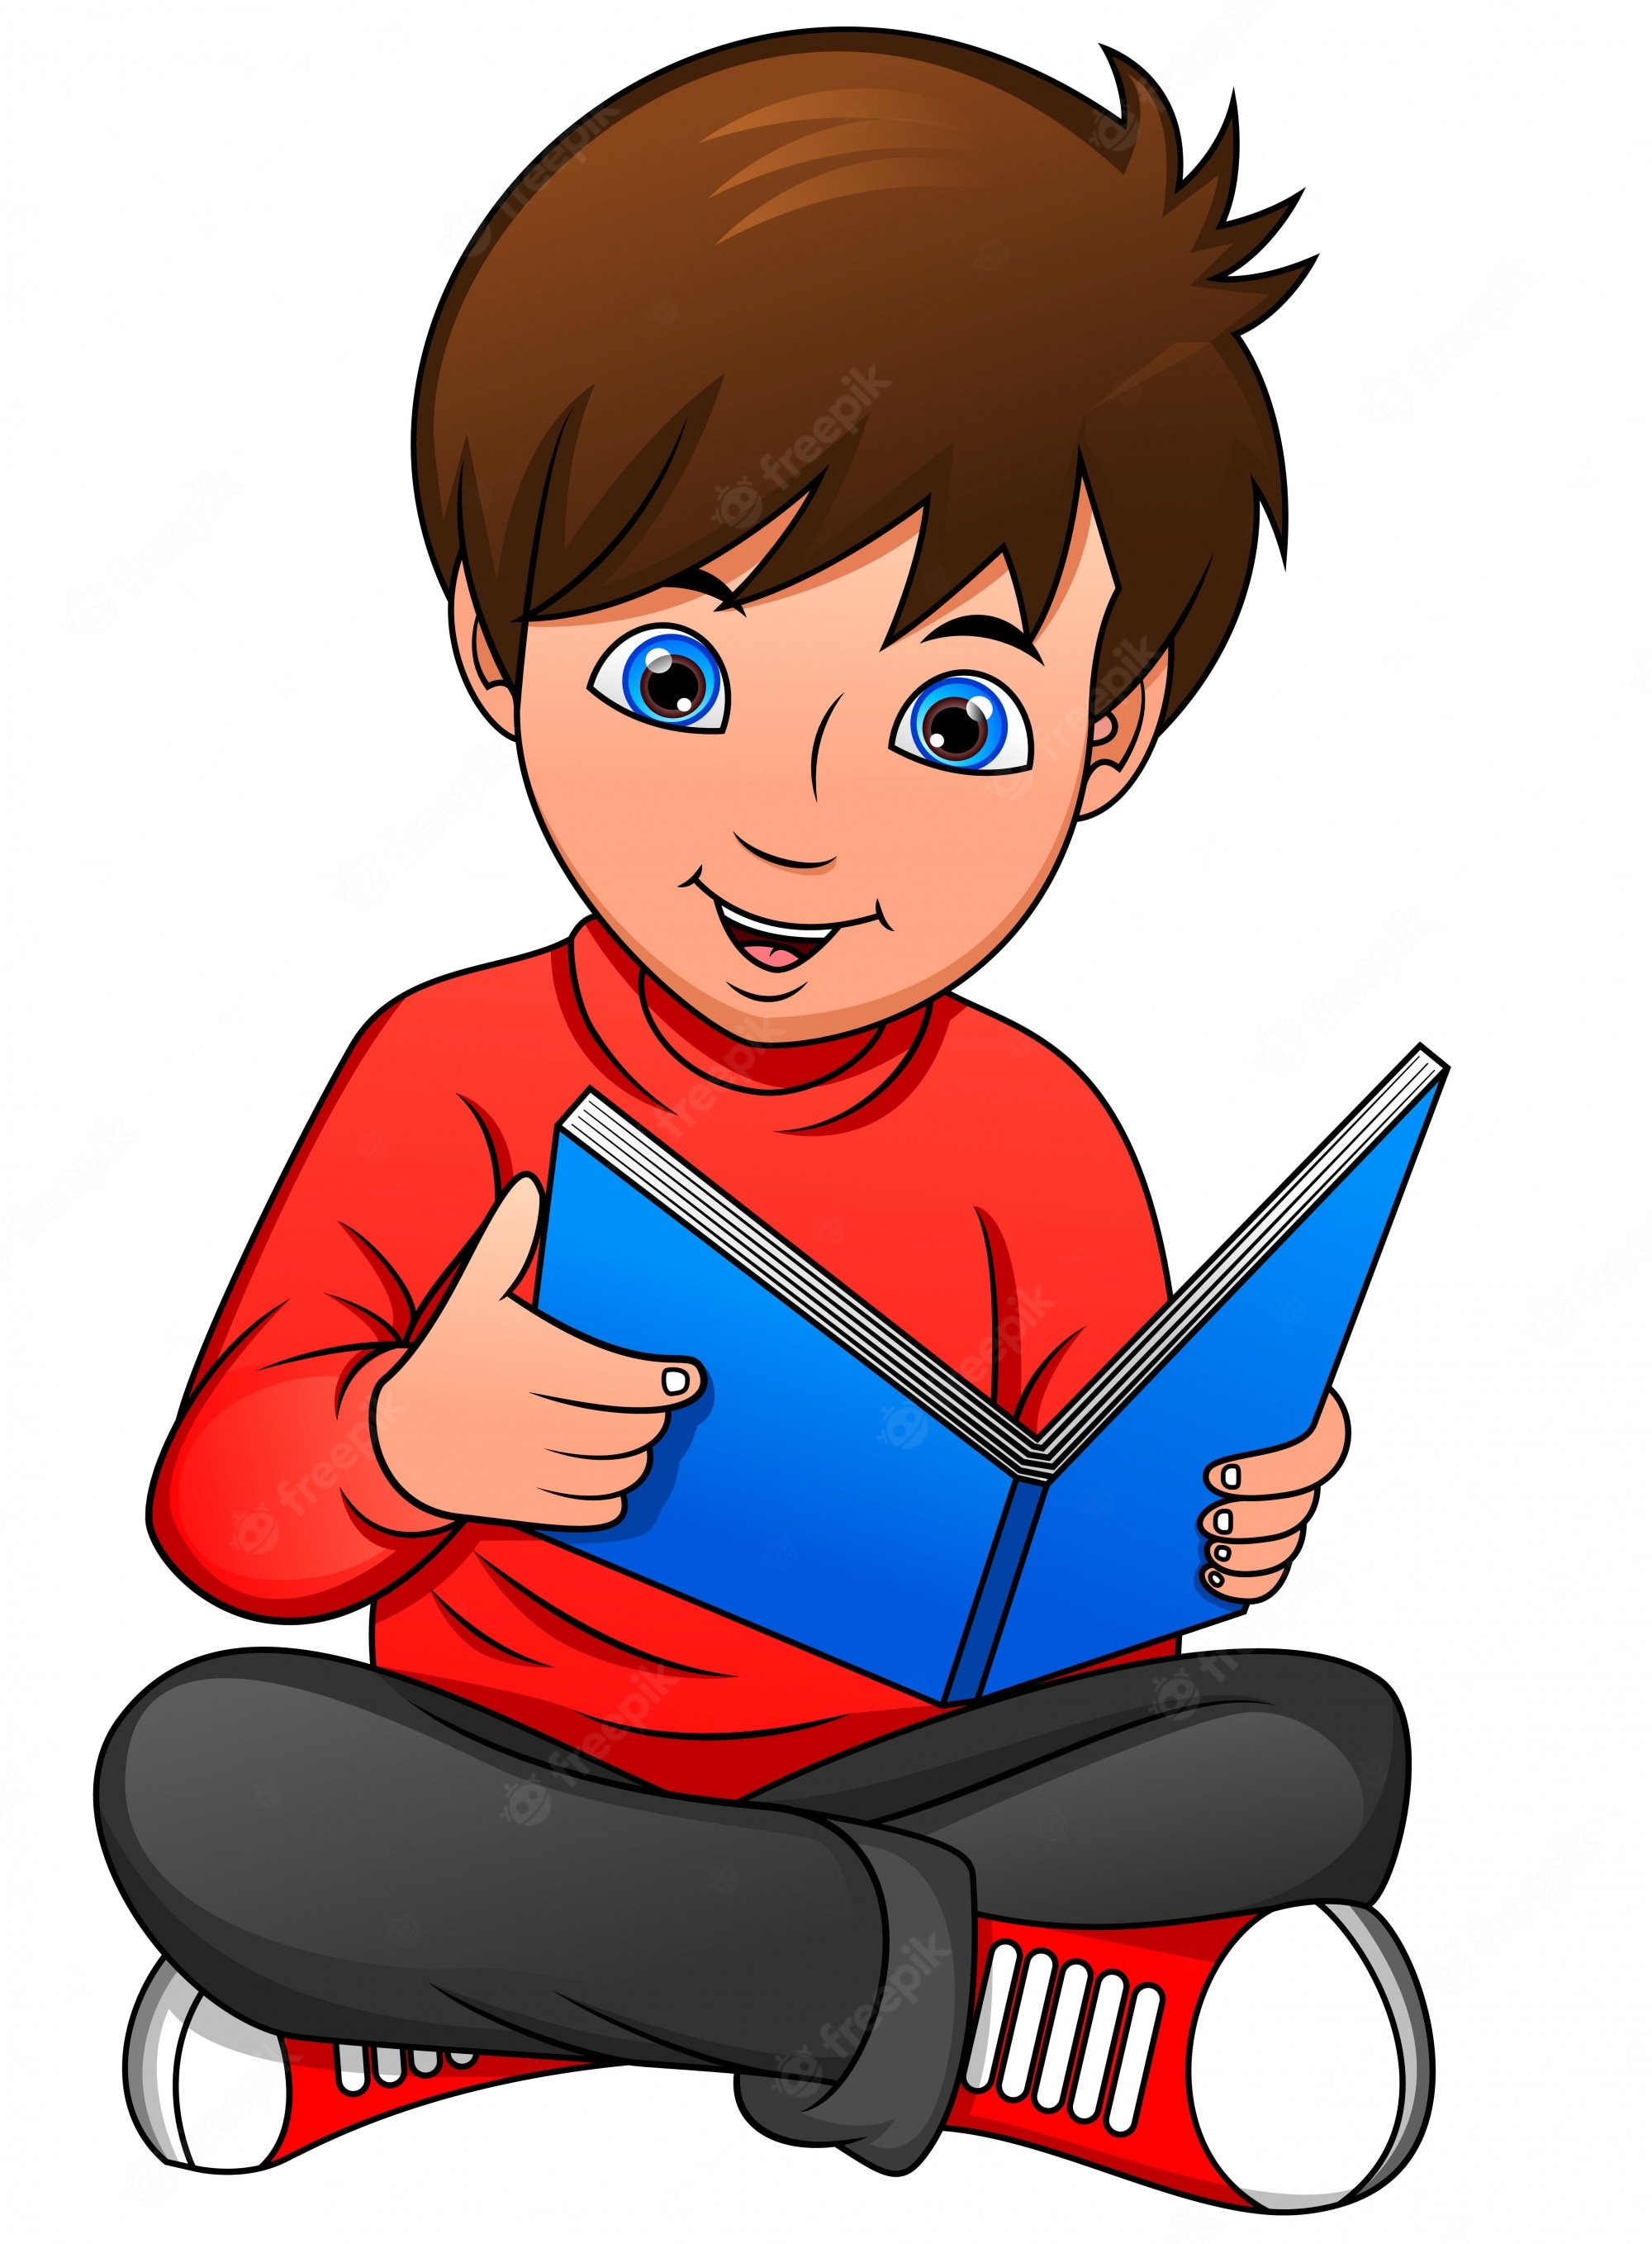 Knigi read book. Мальчик читает книгу. Мальчик читает книгу рисунок. Картинка мальчик читает книгу. Мультяшный мальчик с книгой.